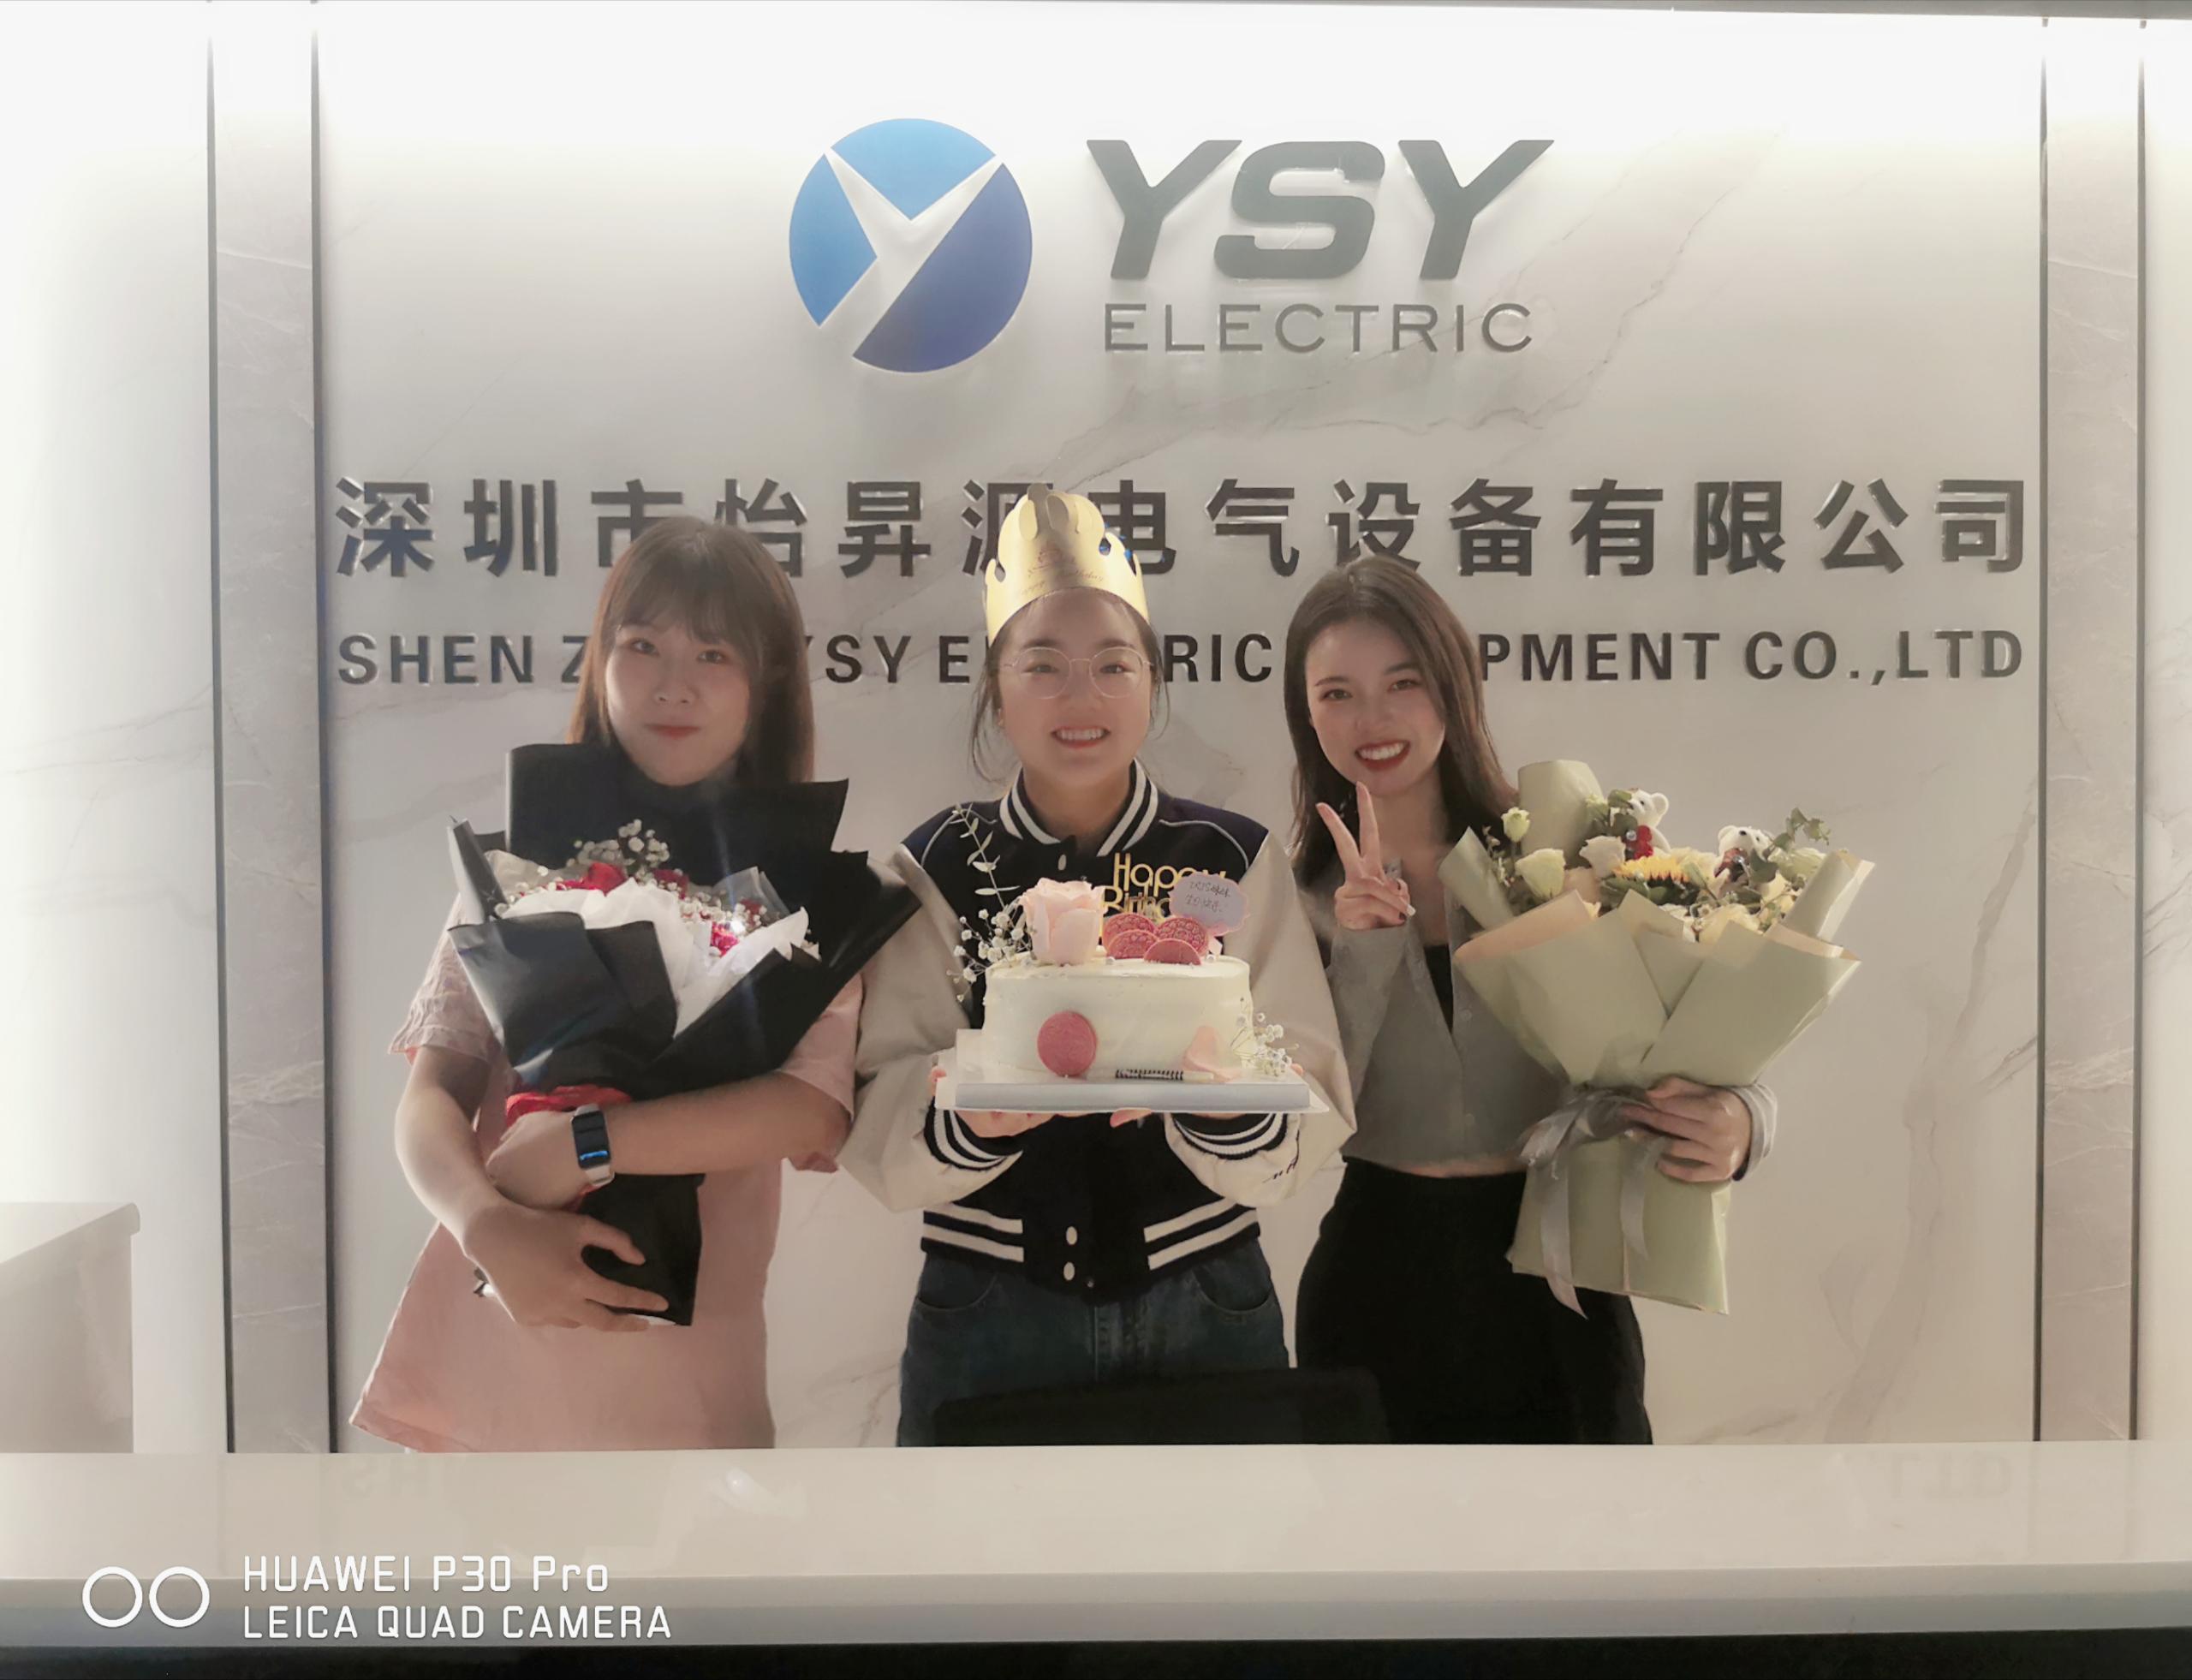 Všechno nejlepší k 2 prodejům YSY Electric!